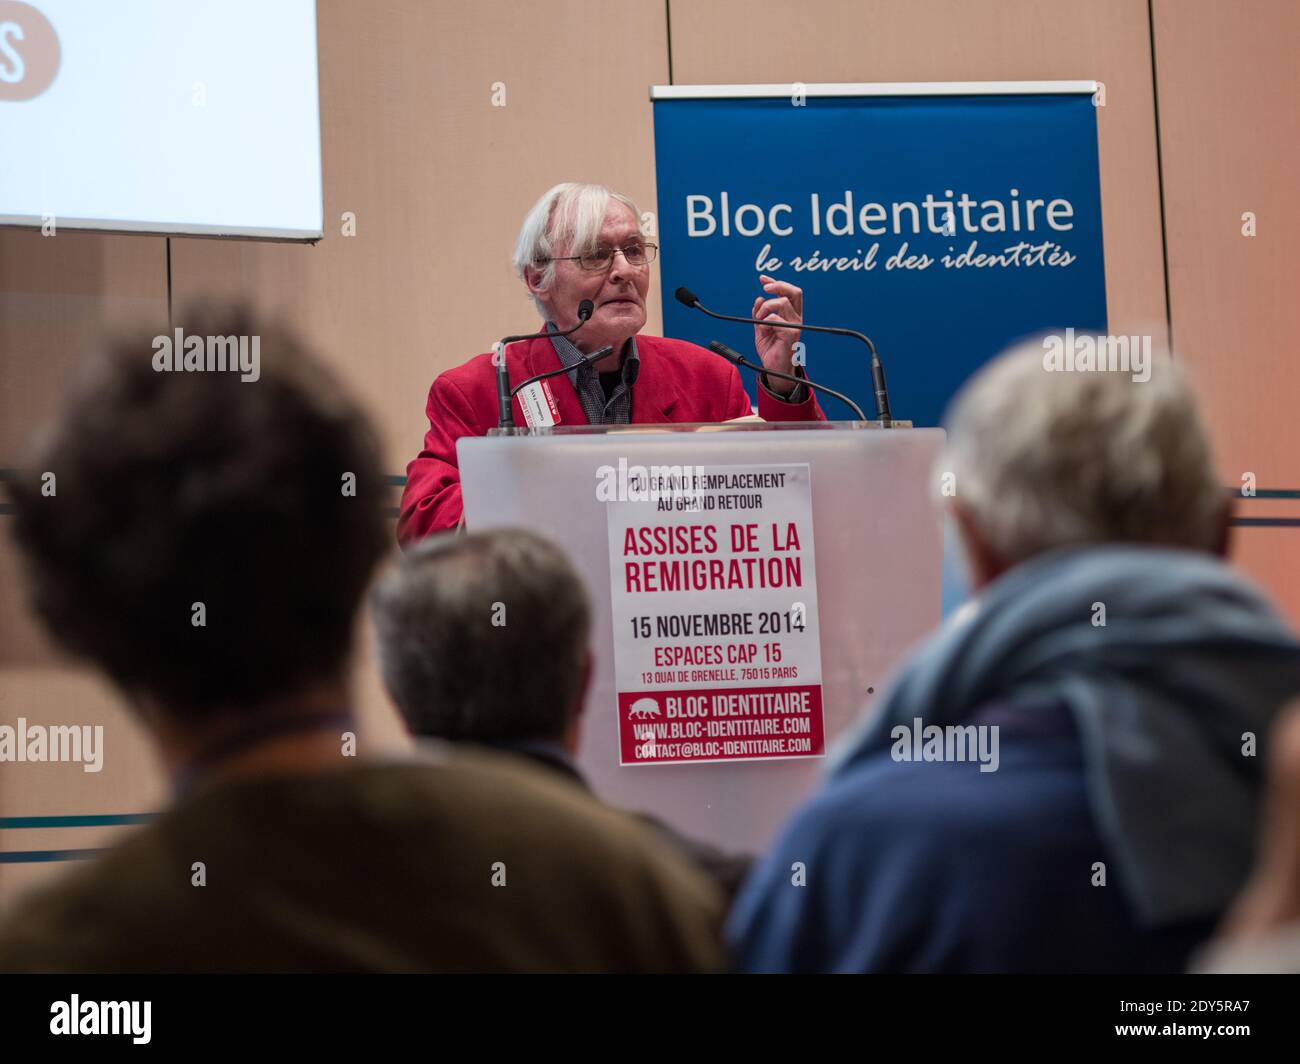 Guillaume Faye partecipa al "Assises De la Remigration" ospitato dal gruppo di estrema destra Bloc Identitaire a Parigi, Francia, 5 novembre 2014. Foto di Renaud Khanh/ABACAPRESS.COM Foto Stock